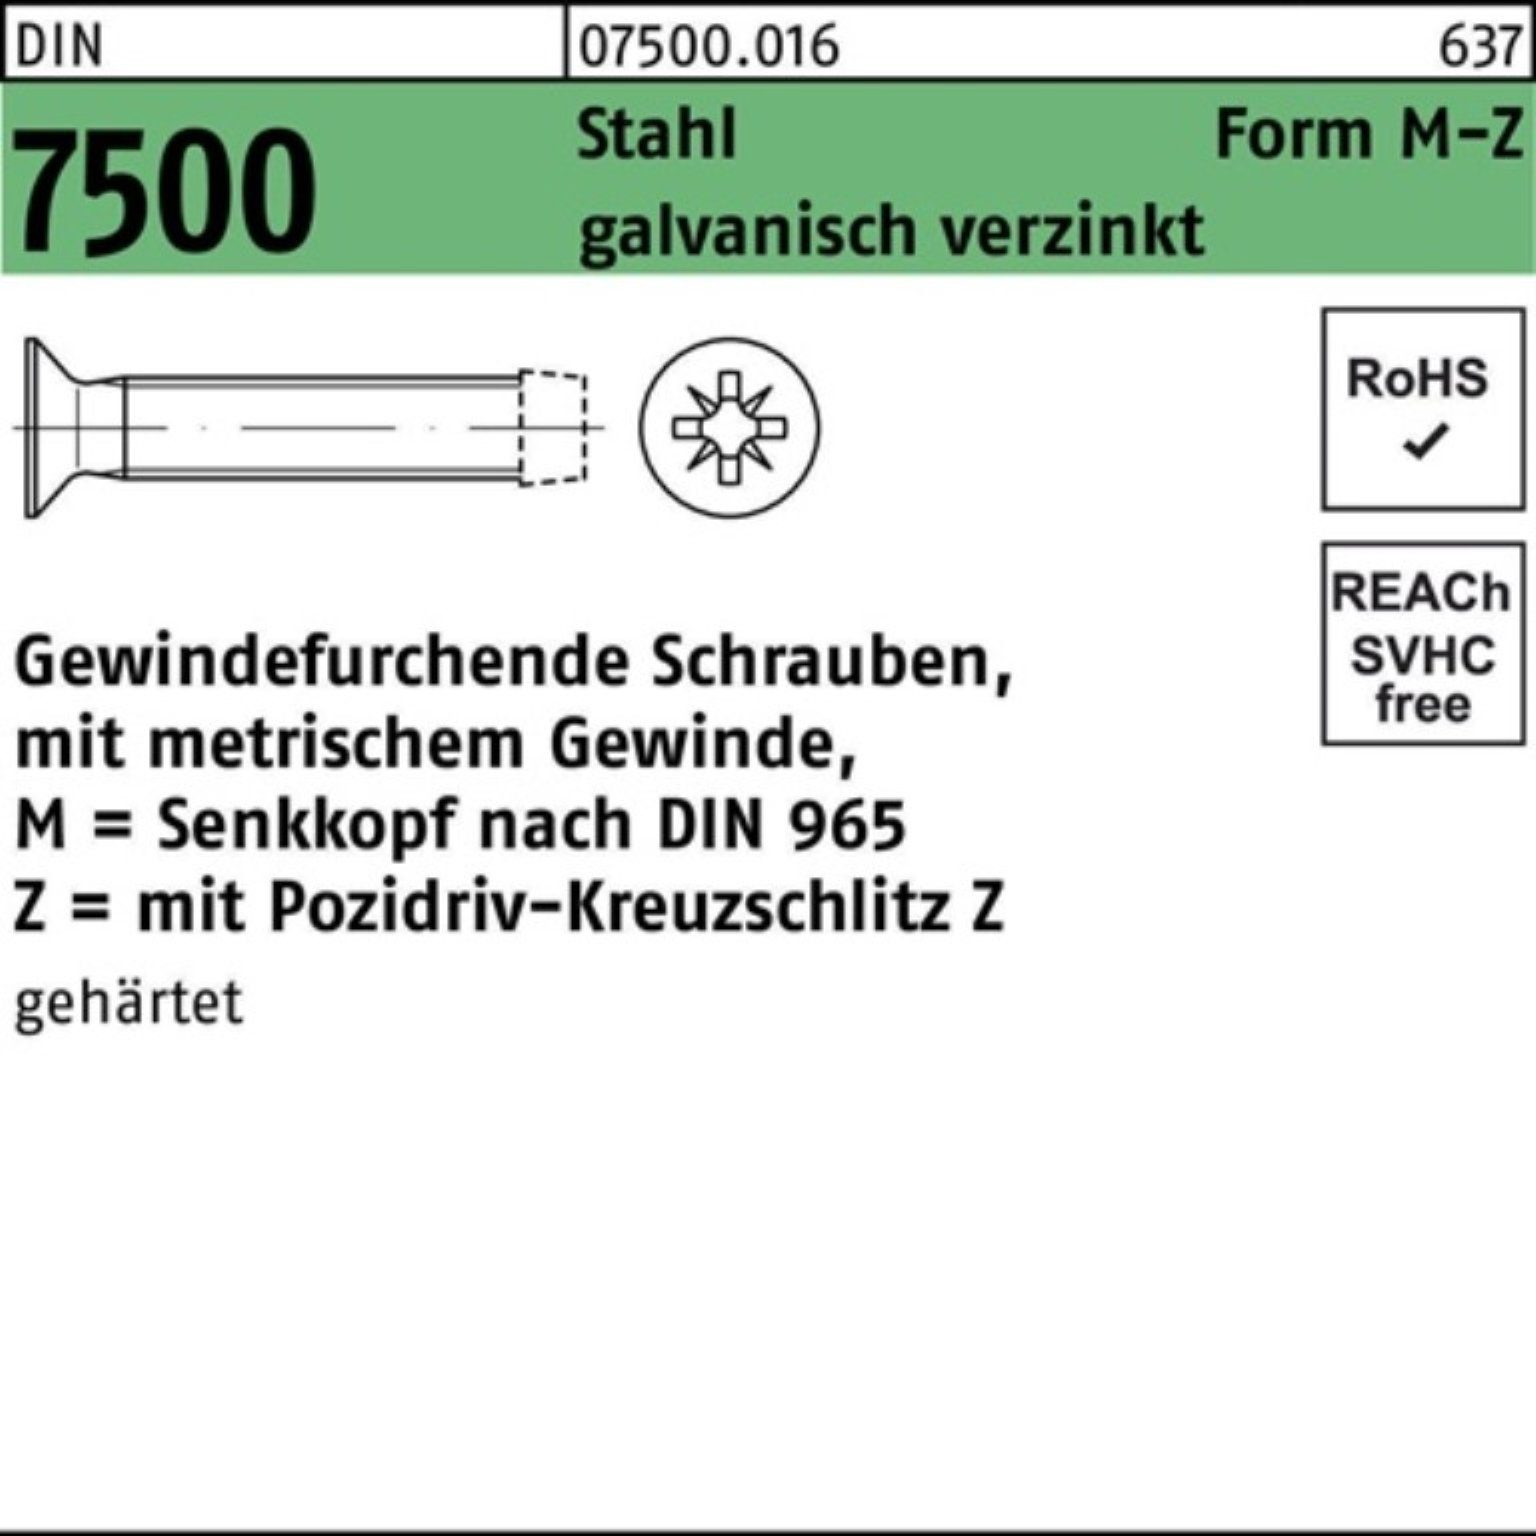 Gewindeschraube Gewindefurchendeschraube MM 1000er Pack Reyher PZ 7500 Stahl DIN 3x12-Z SEKO